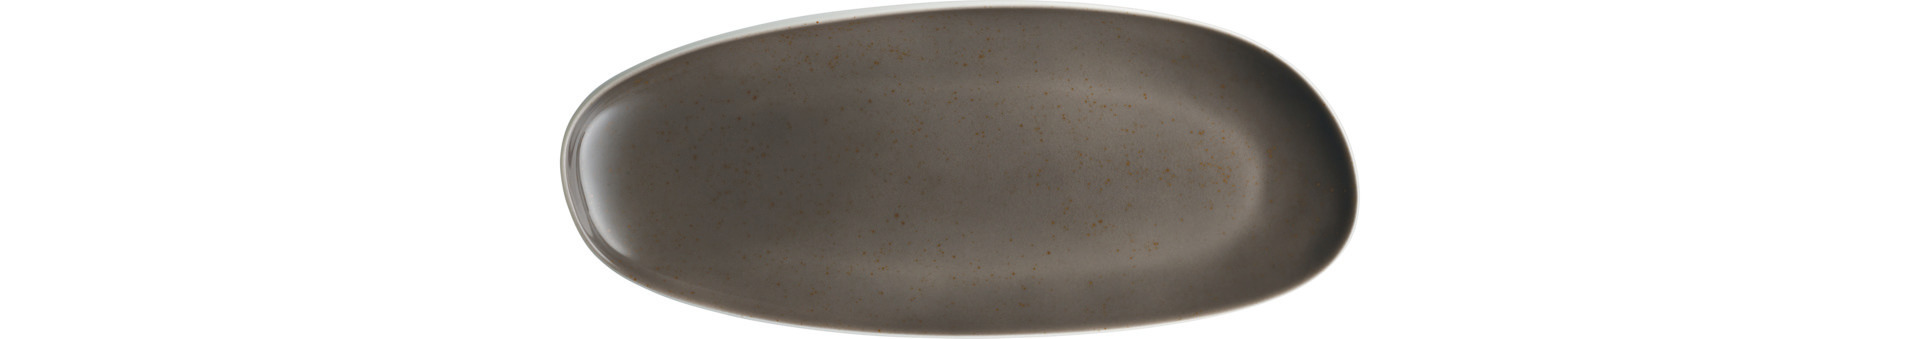 Coupplatte oval 382 x 158 mm Unique dunkelgrau